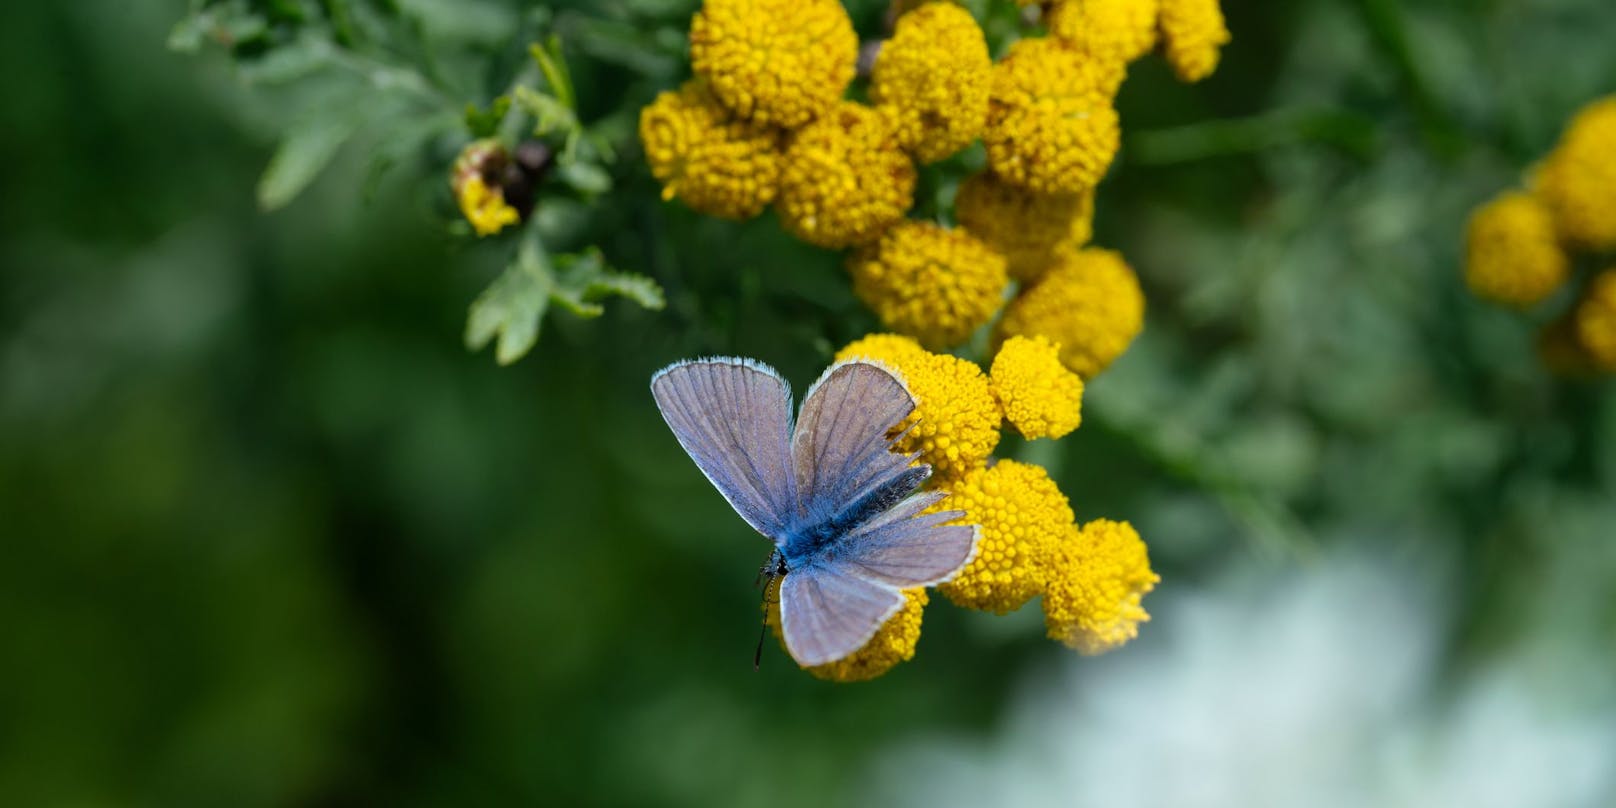 Schmetterlinge finden Rainfarn toll, doch Haustiere und Kinder sollten die gelbe Quastelblume lieber nicht kosten. 